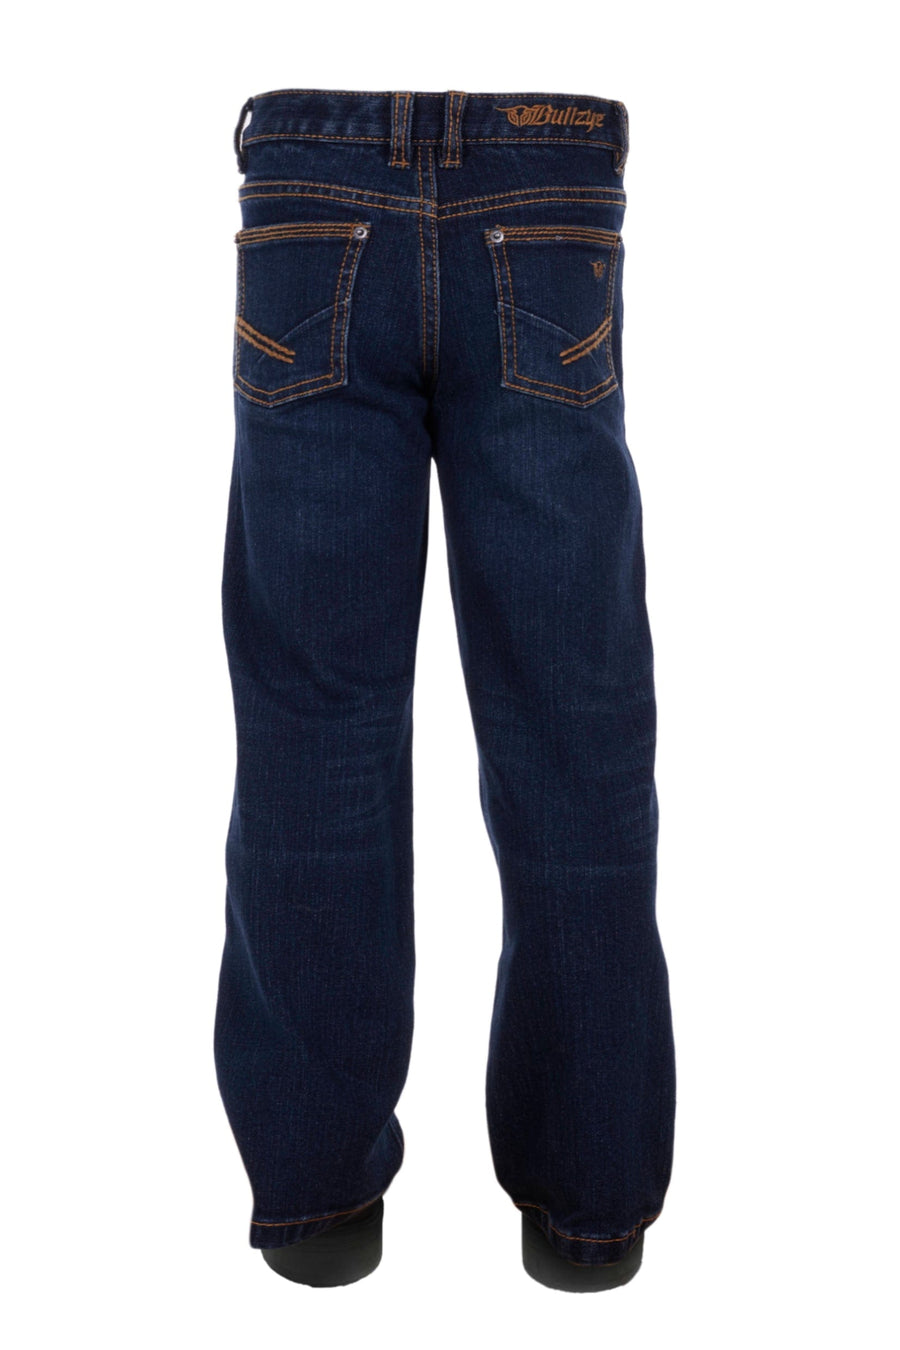 Bullzye Kids Jeans 10R / Indigo Bullzye Jeans Boys Charger Straight (B3W3220255)